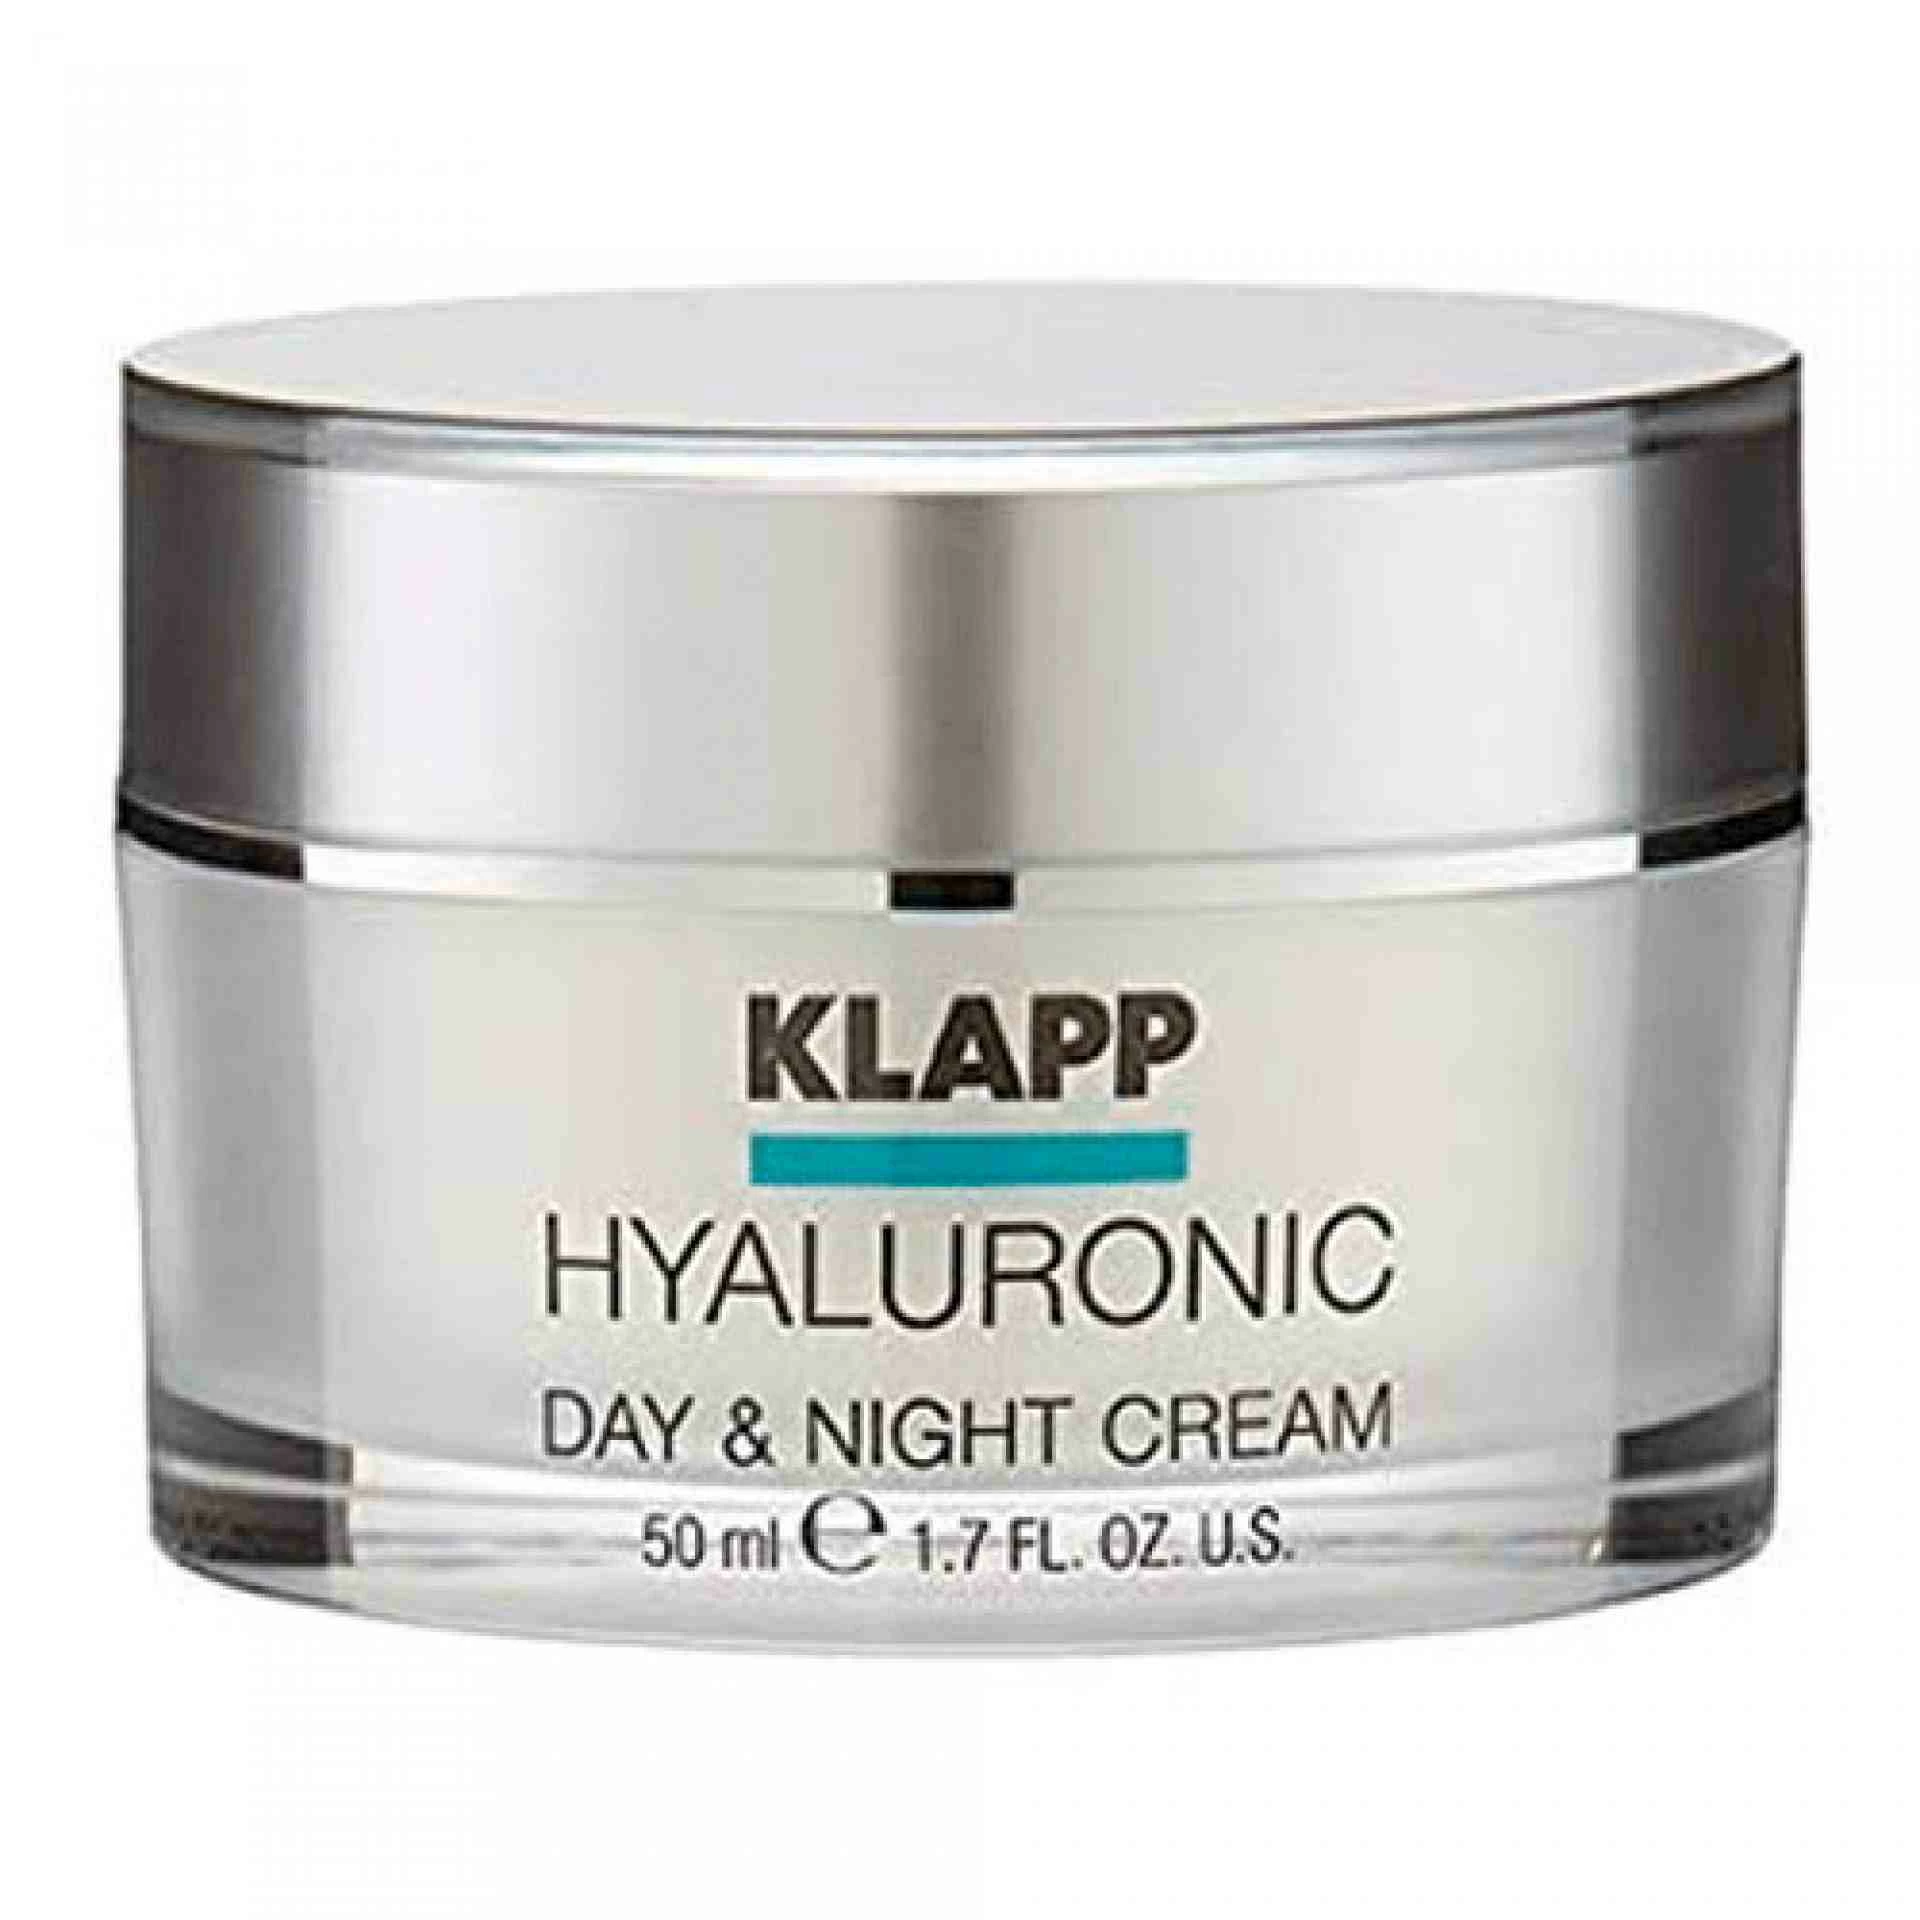 Day & Night Cream | Crema Reafirmante de Día y Noche - Hyaluronic Multiple Effect - Klapp ®